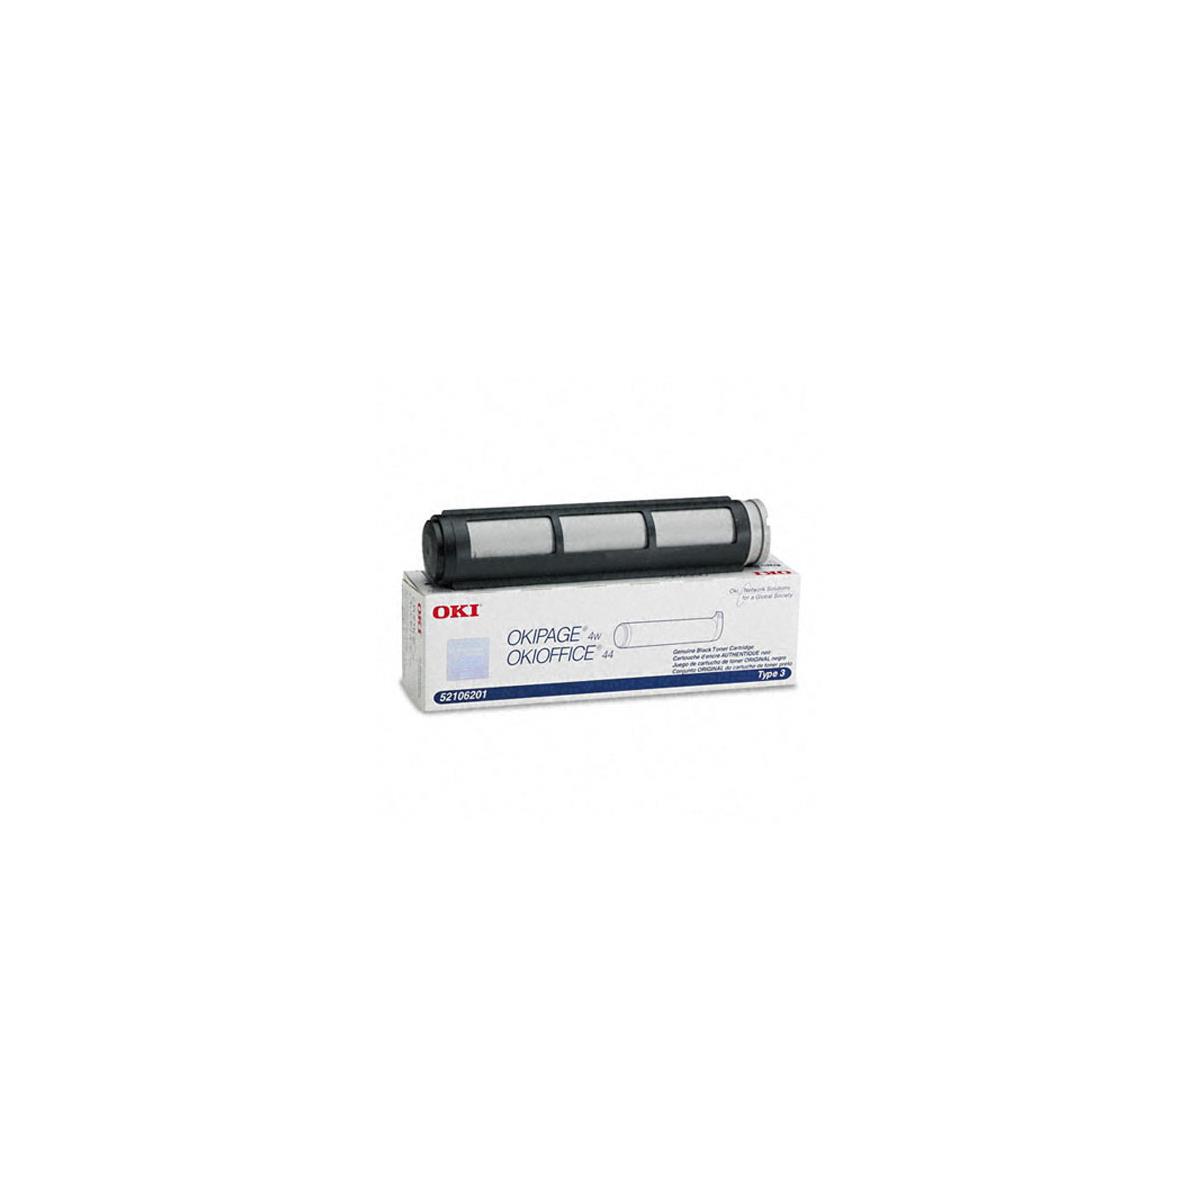 Image of OKI Data 52106201 Black Toner Cartridge for OKI DataPage 4w